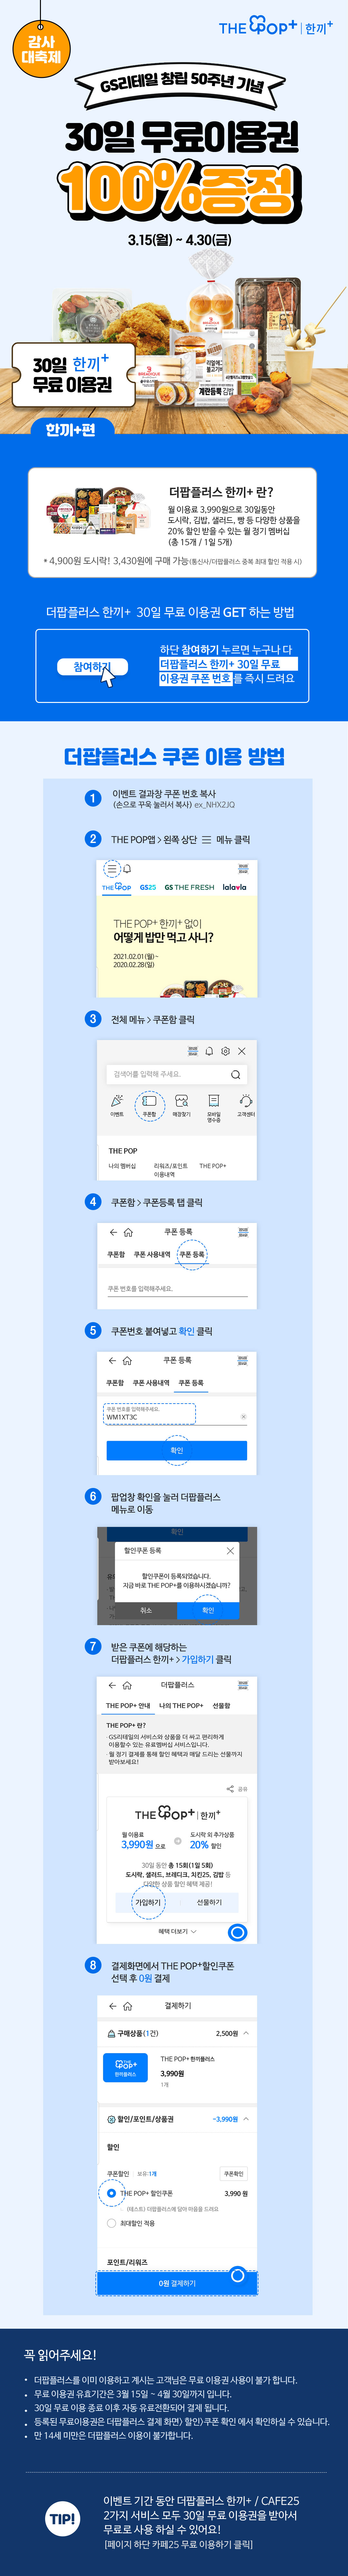 한끼+ 30일 무료이용권 100% 증정! - 하단 상세설명